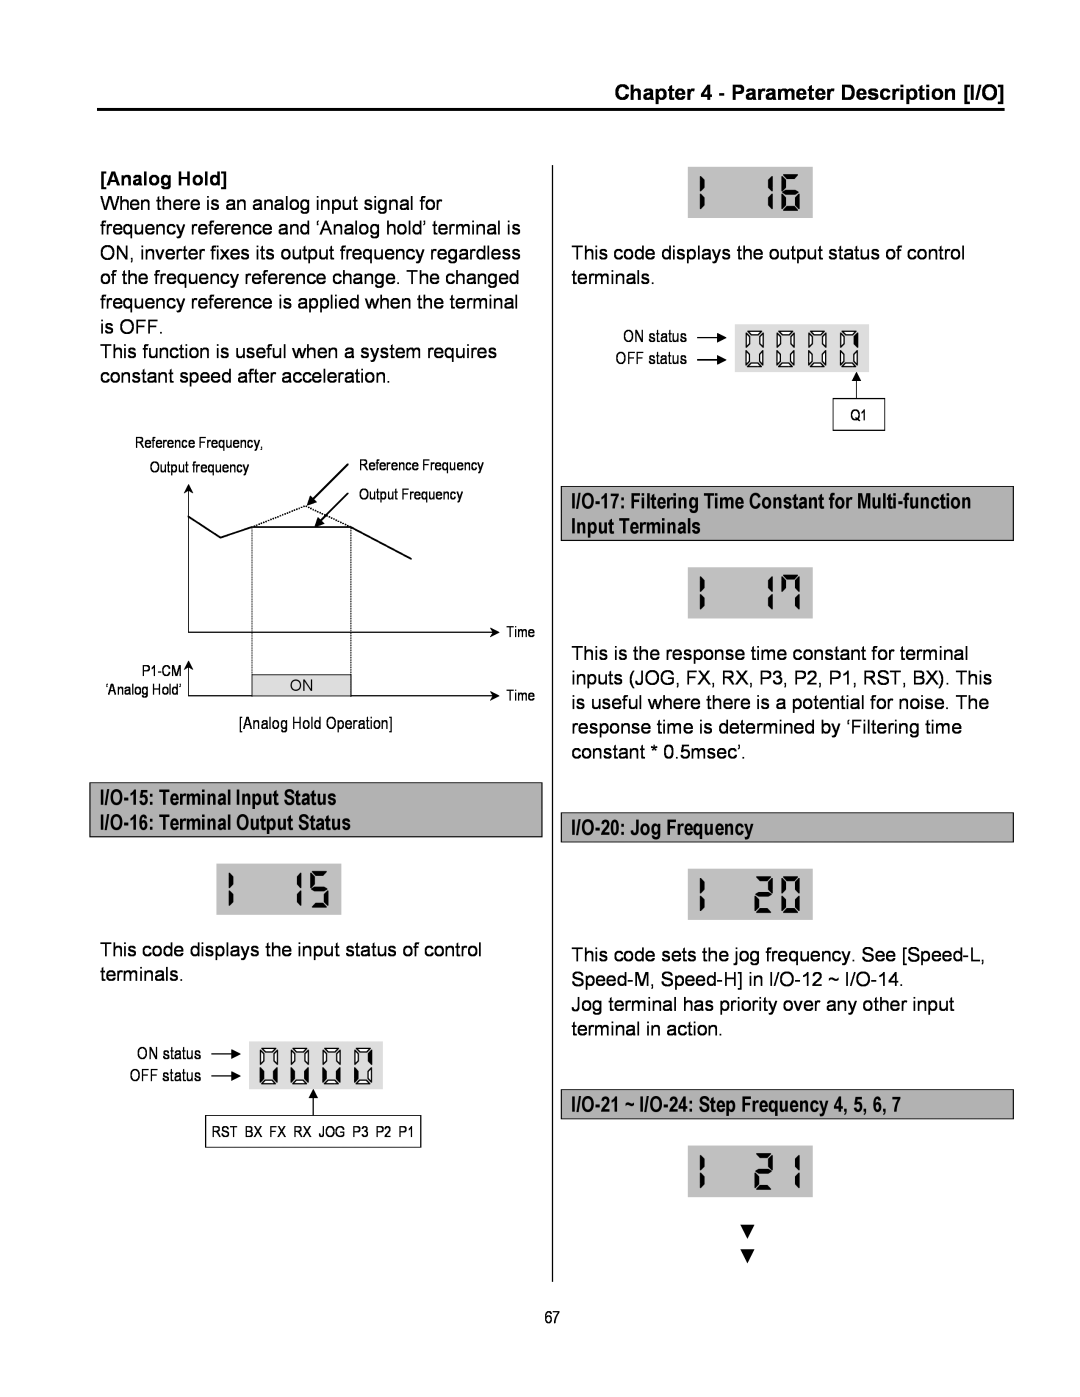 Cleveland Range inverter manual Parameter Description I/O, I/O-15 Terminal Input Status, I/O-16 Terminal Output Status 